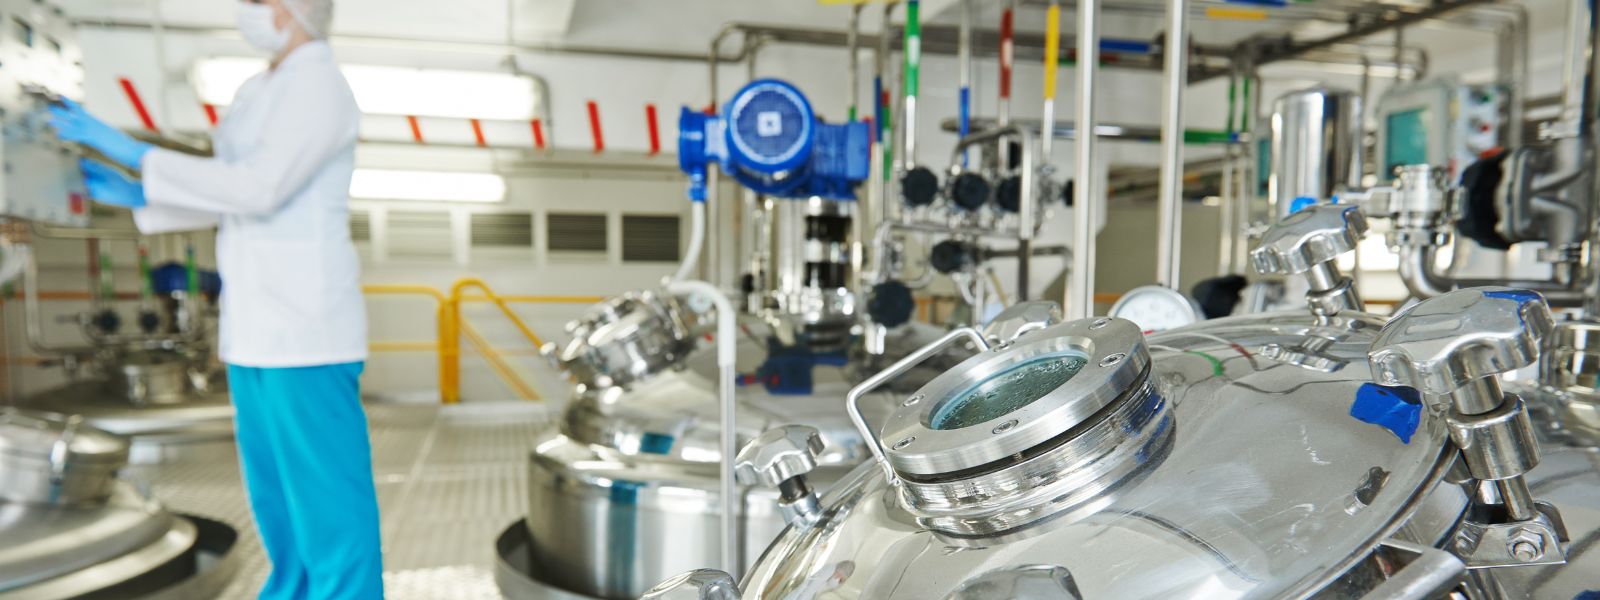 Equipos de purificación de agua y productos de farmacéutica y laboratorio